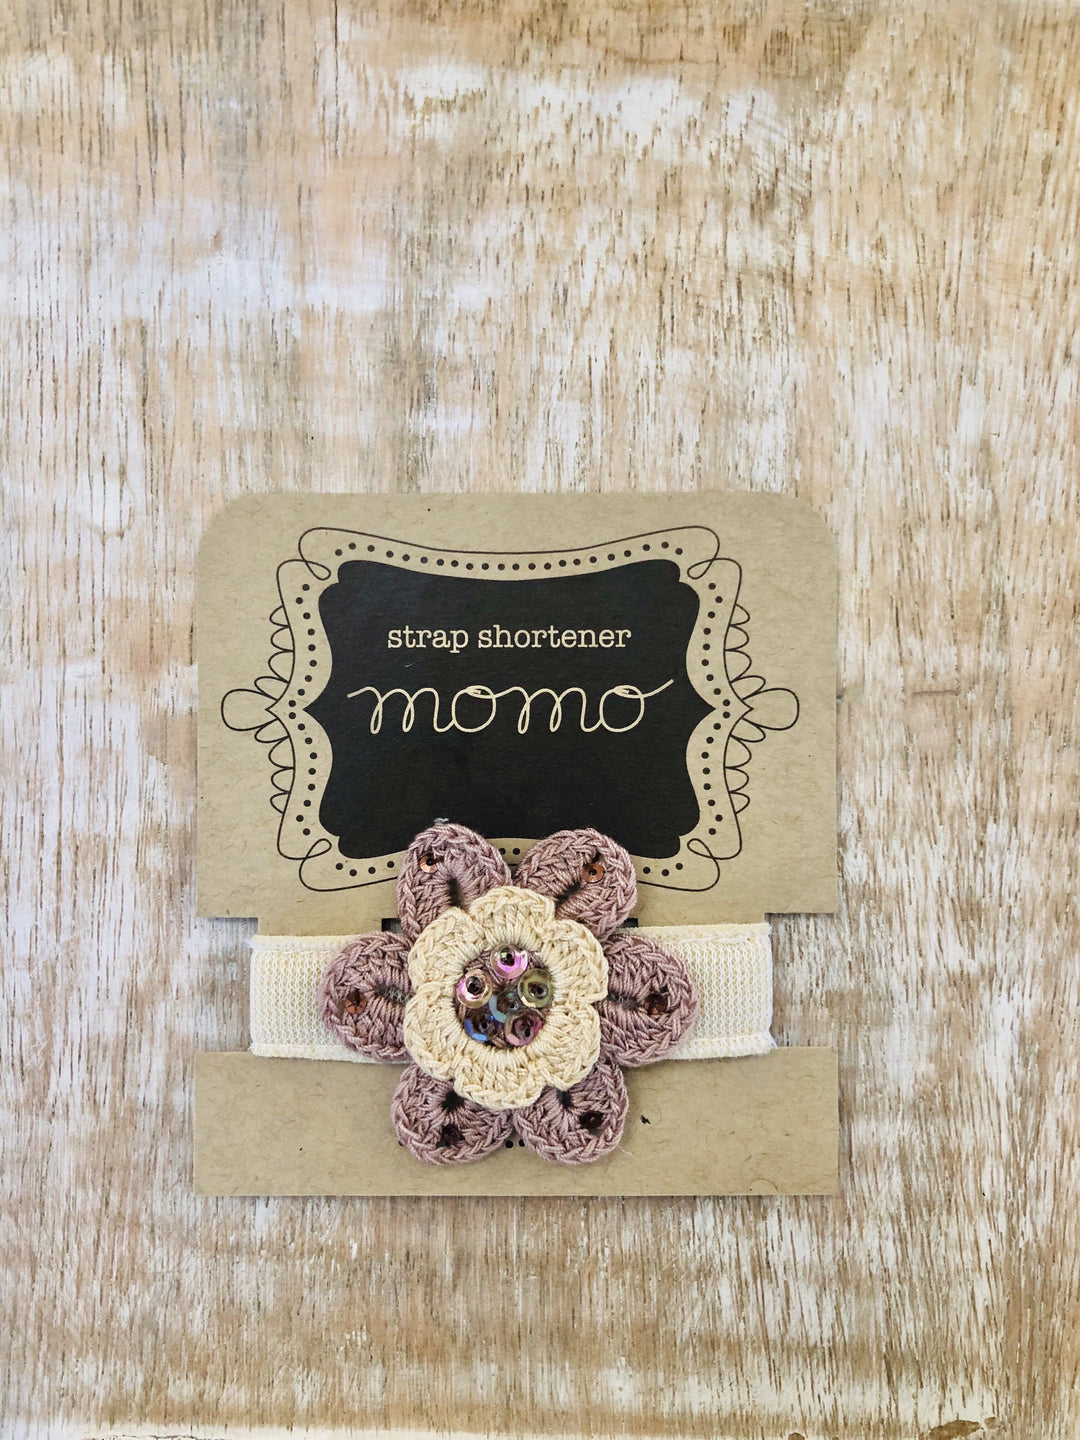 Momo Strap Shortener Strap Shortener Latte Flower